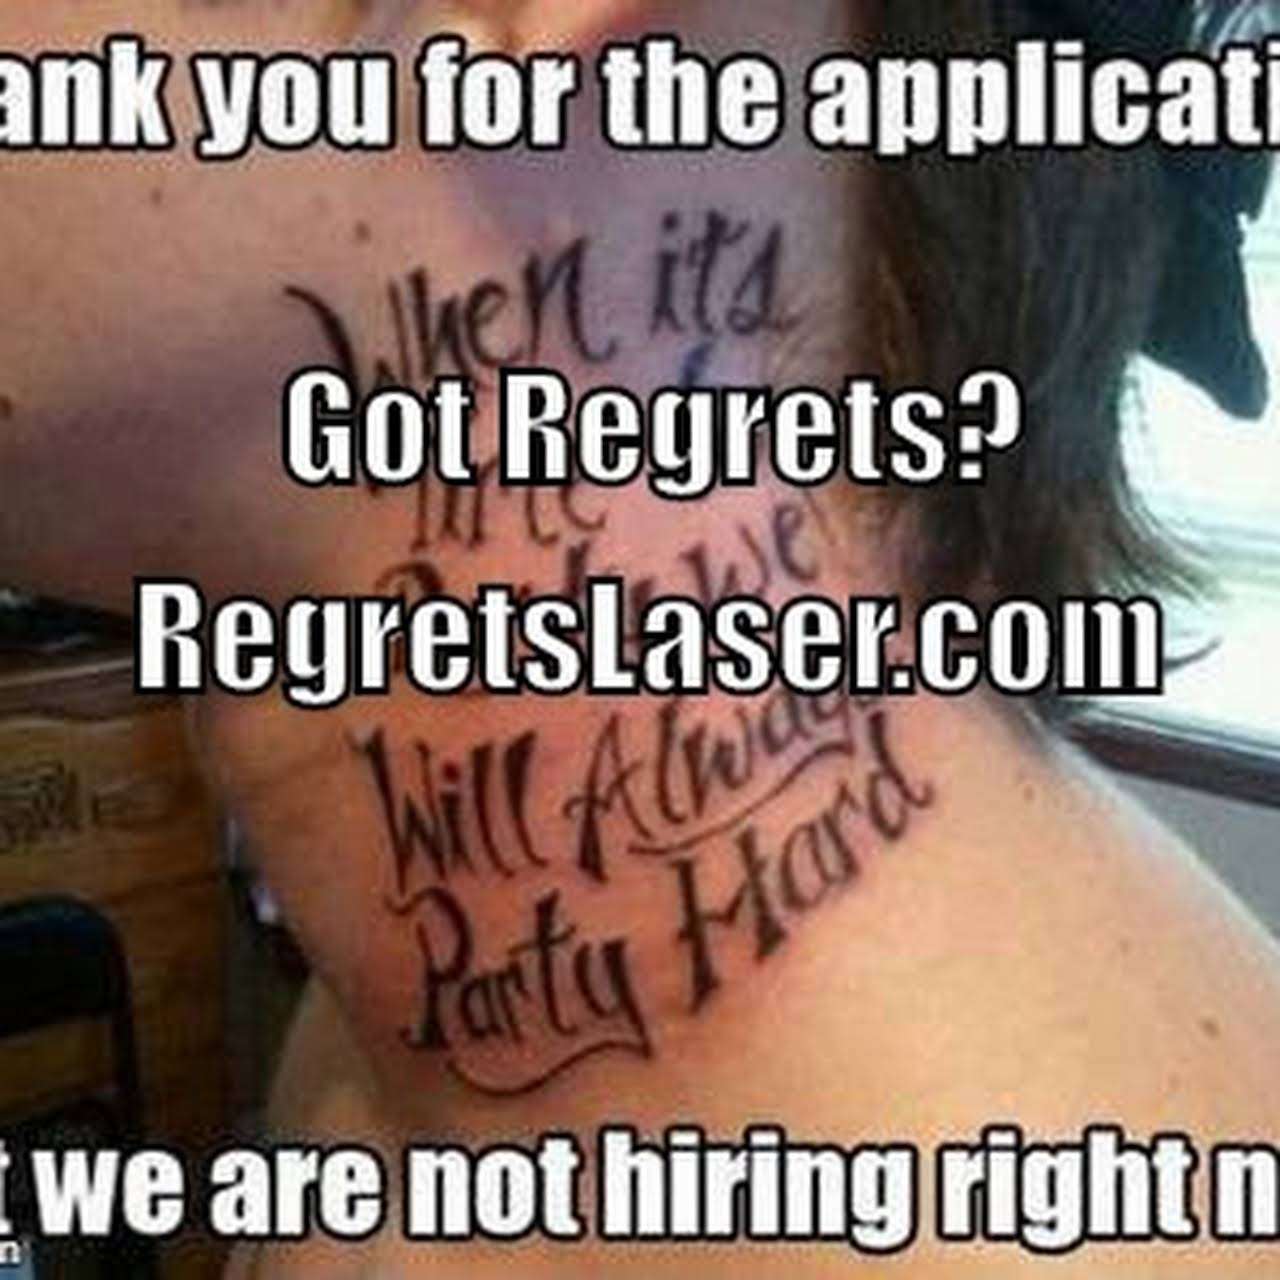 Regrets Laser